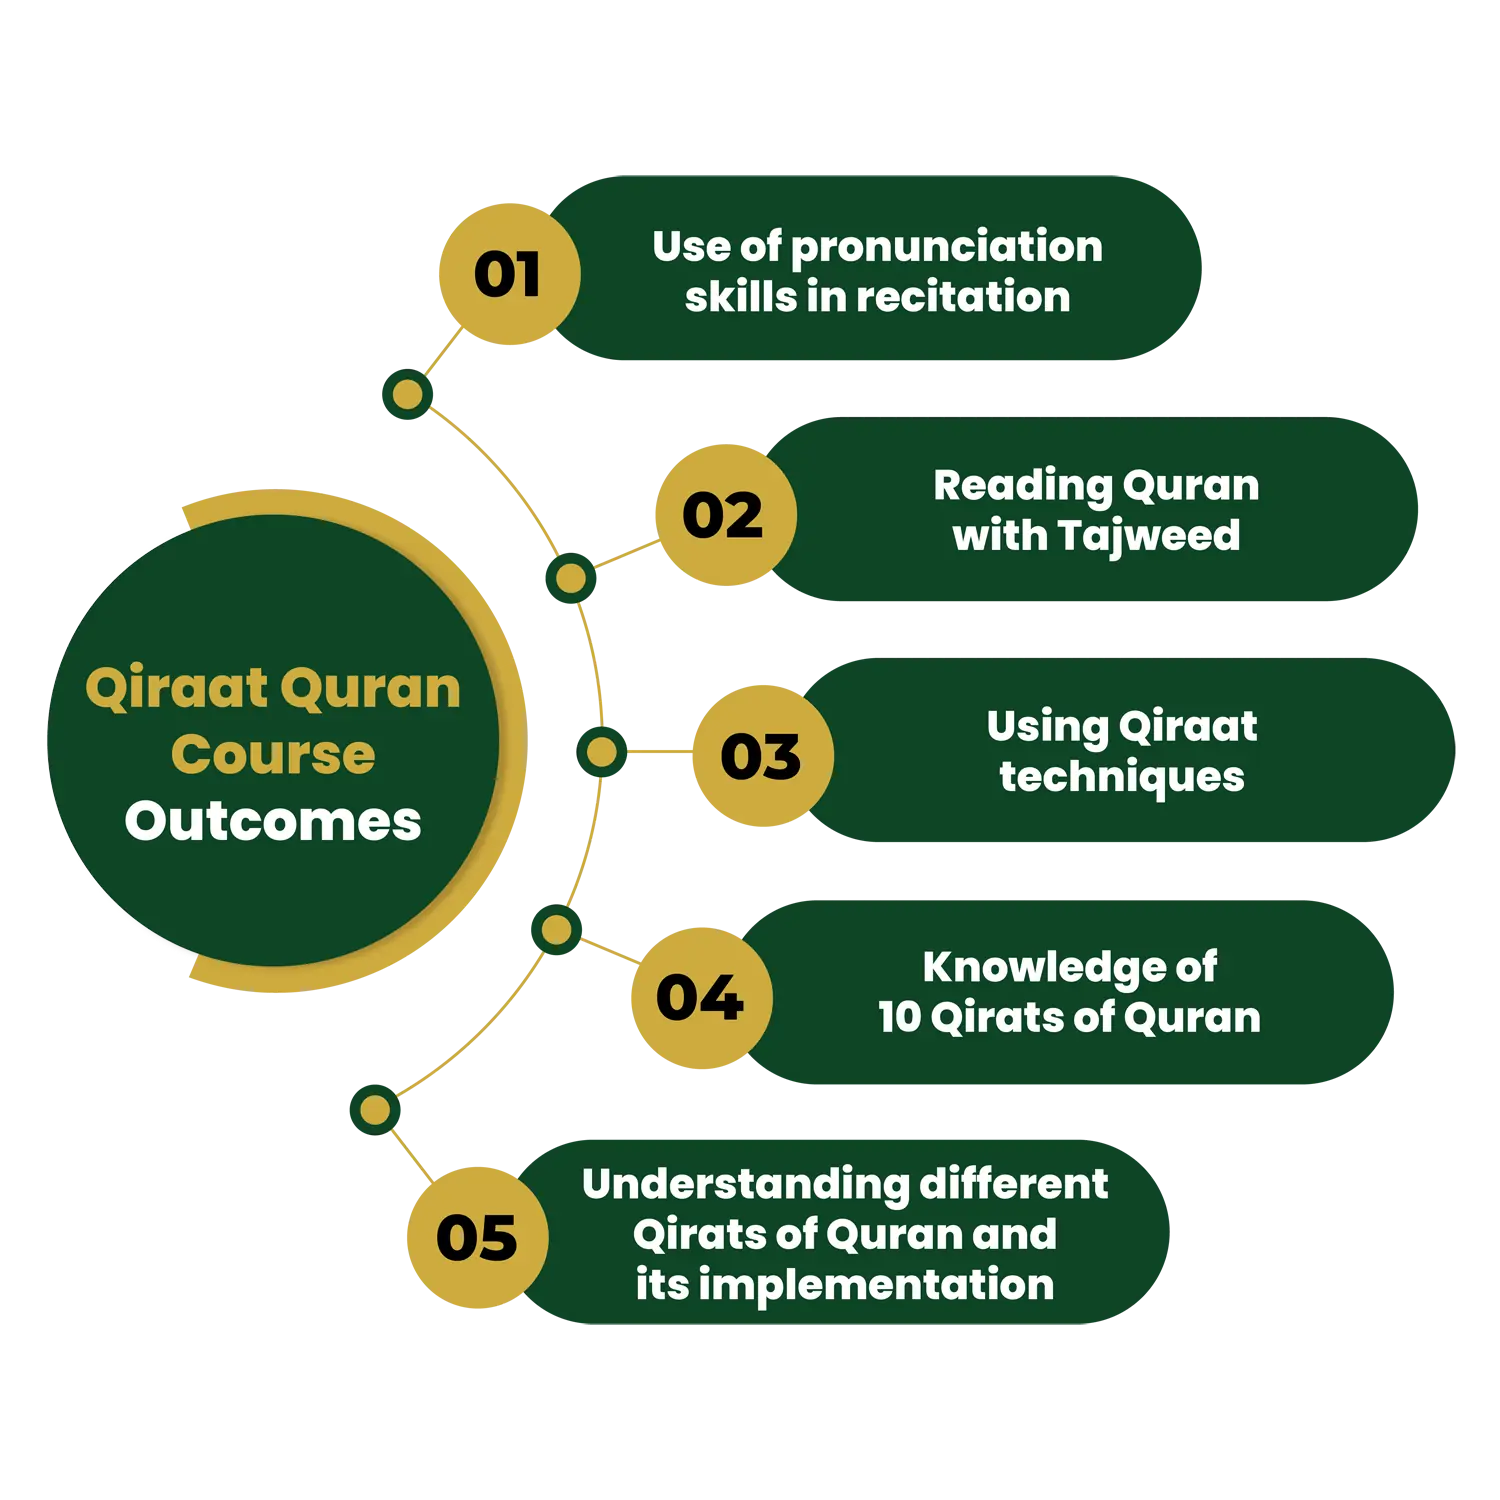 Qiraat Quran Course